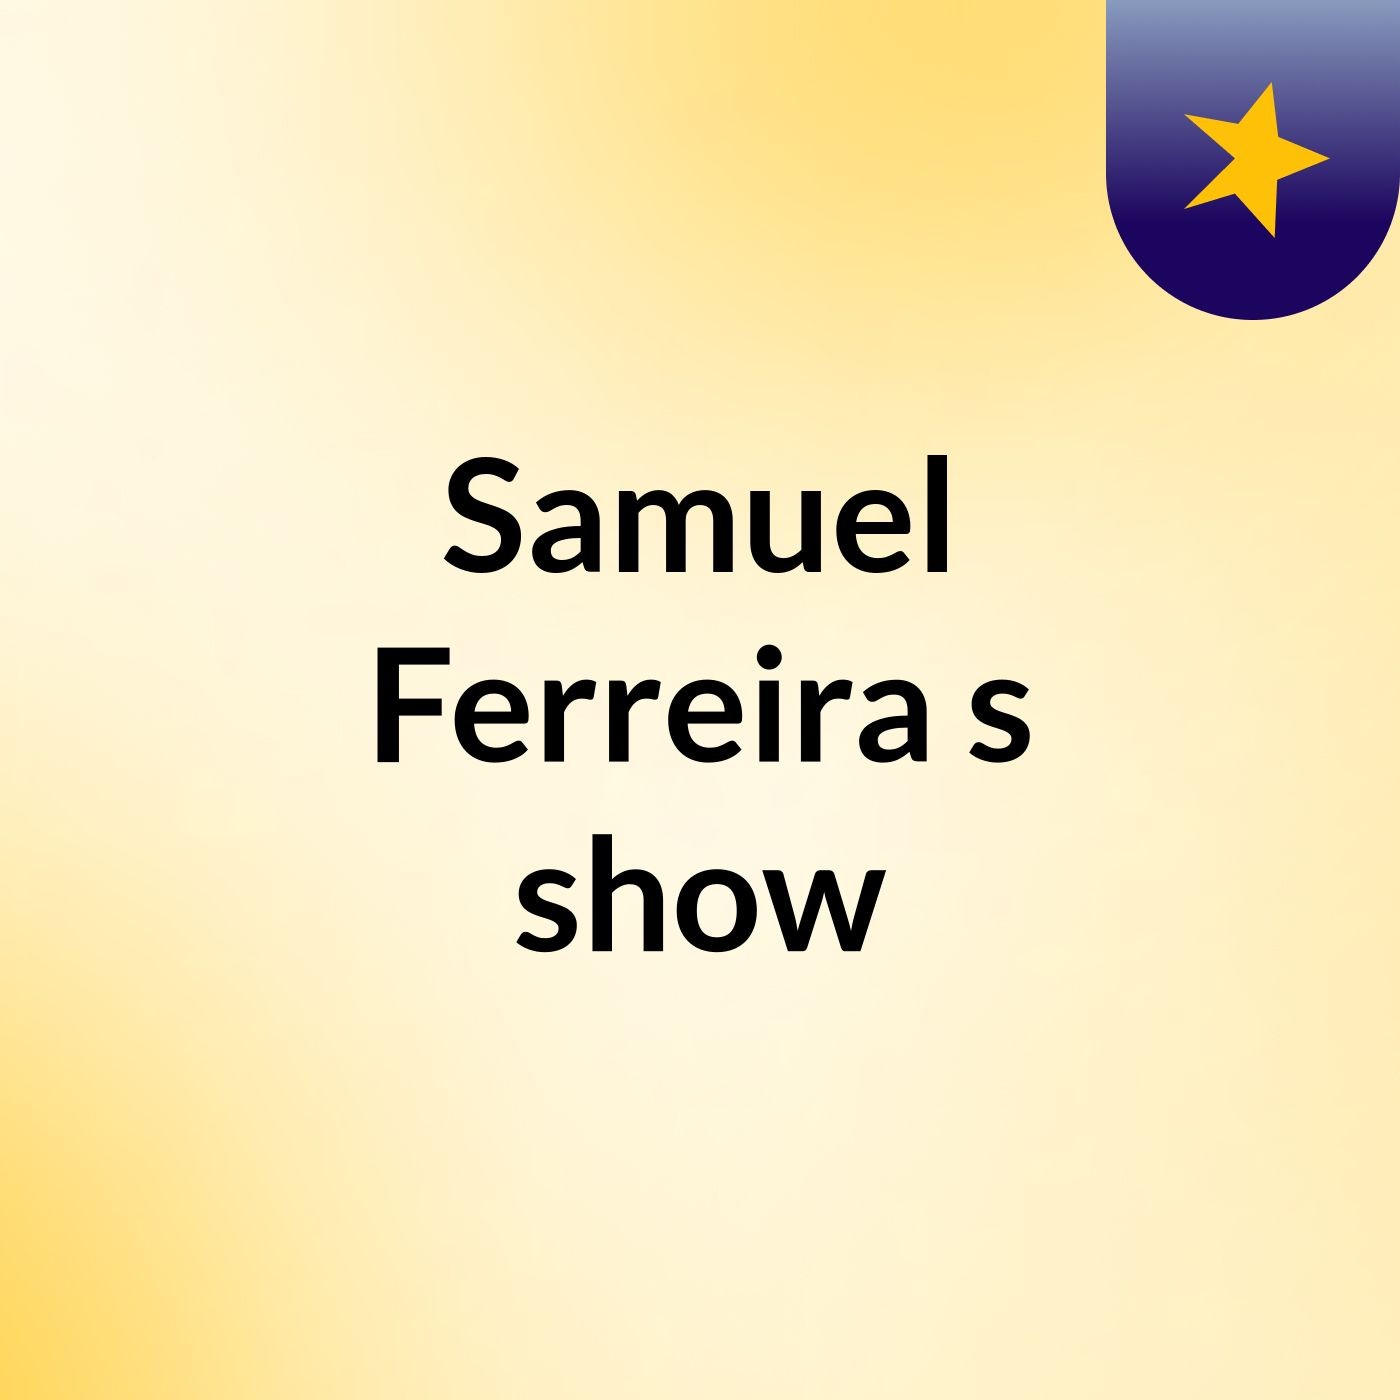 Samuel Ferreira's show